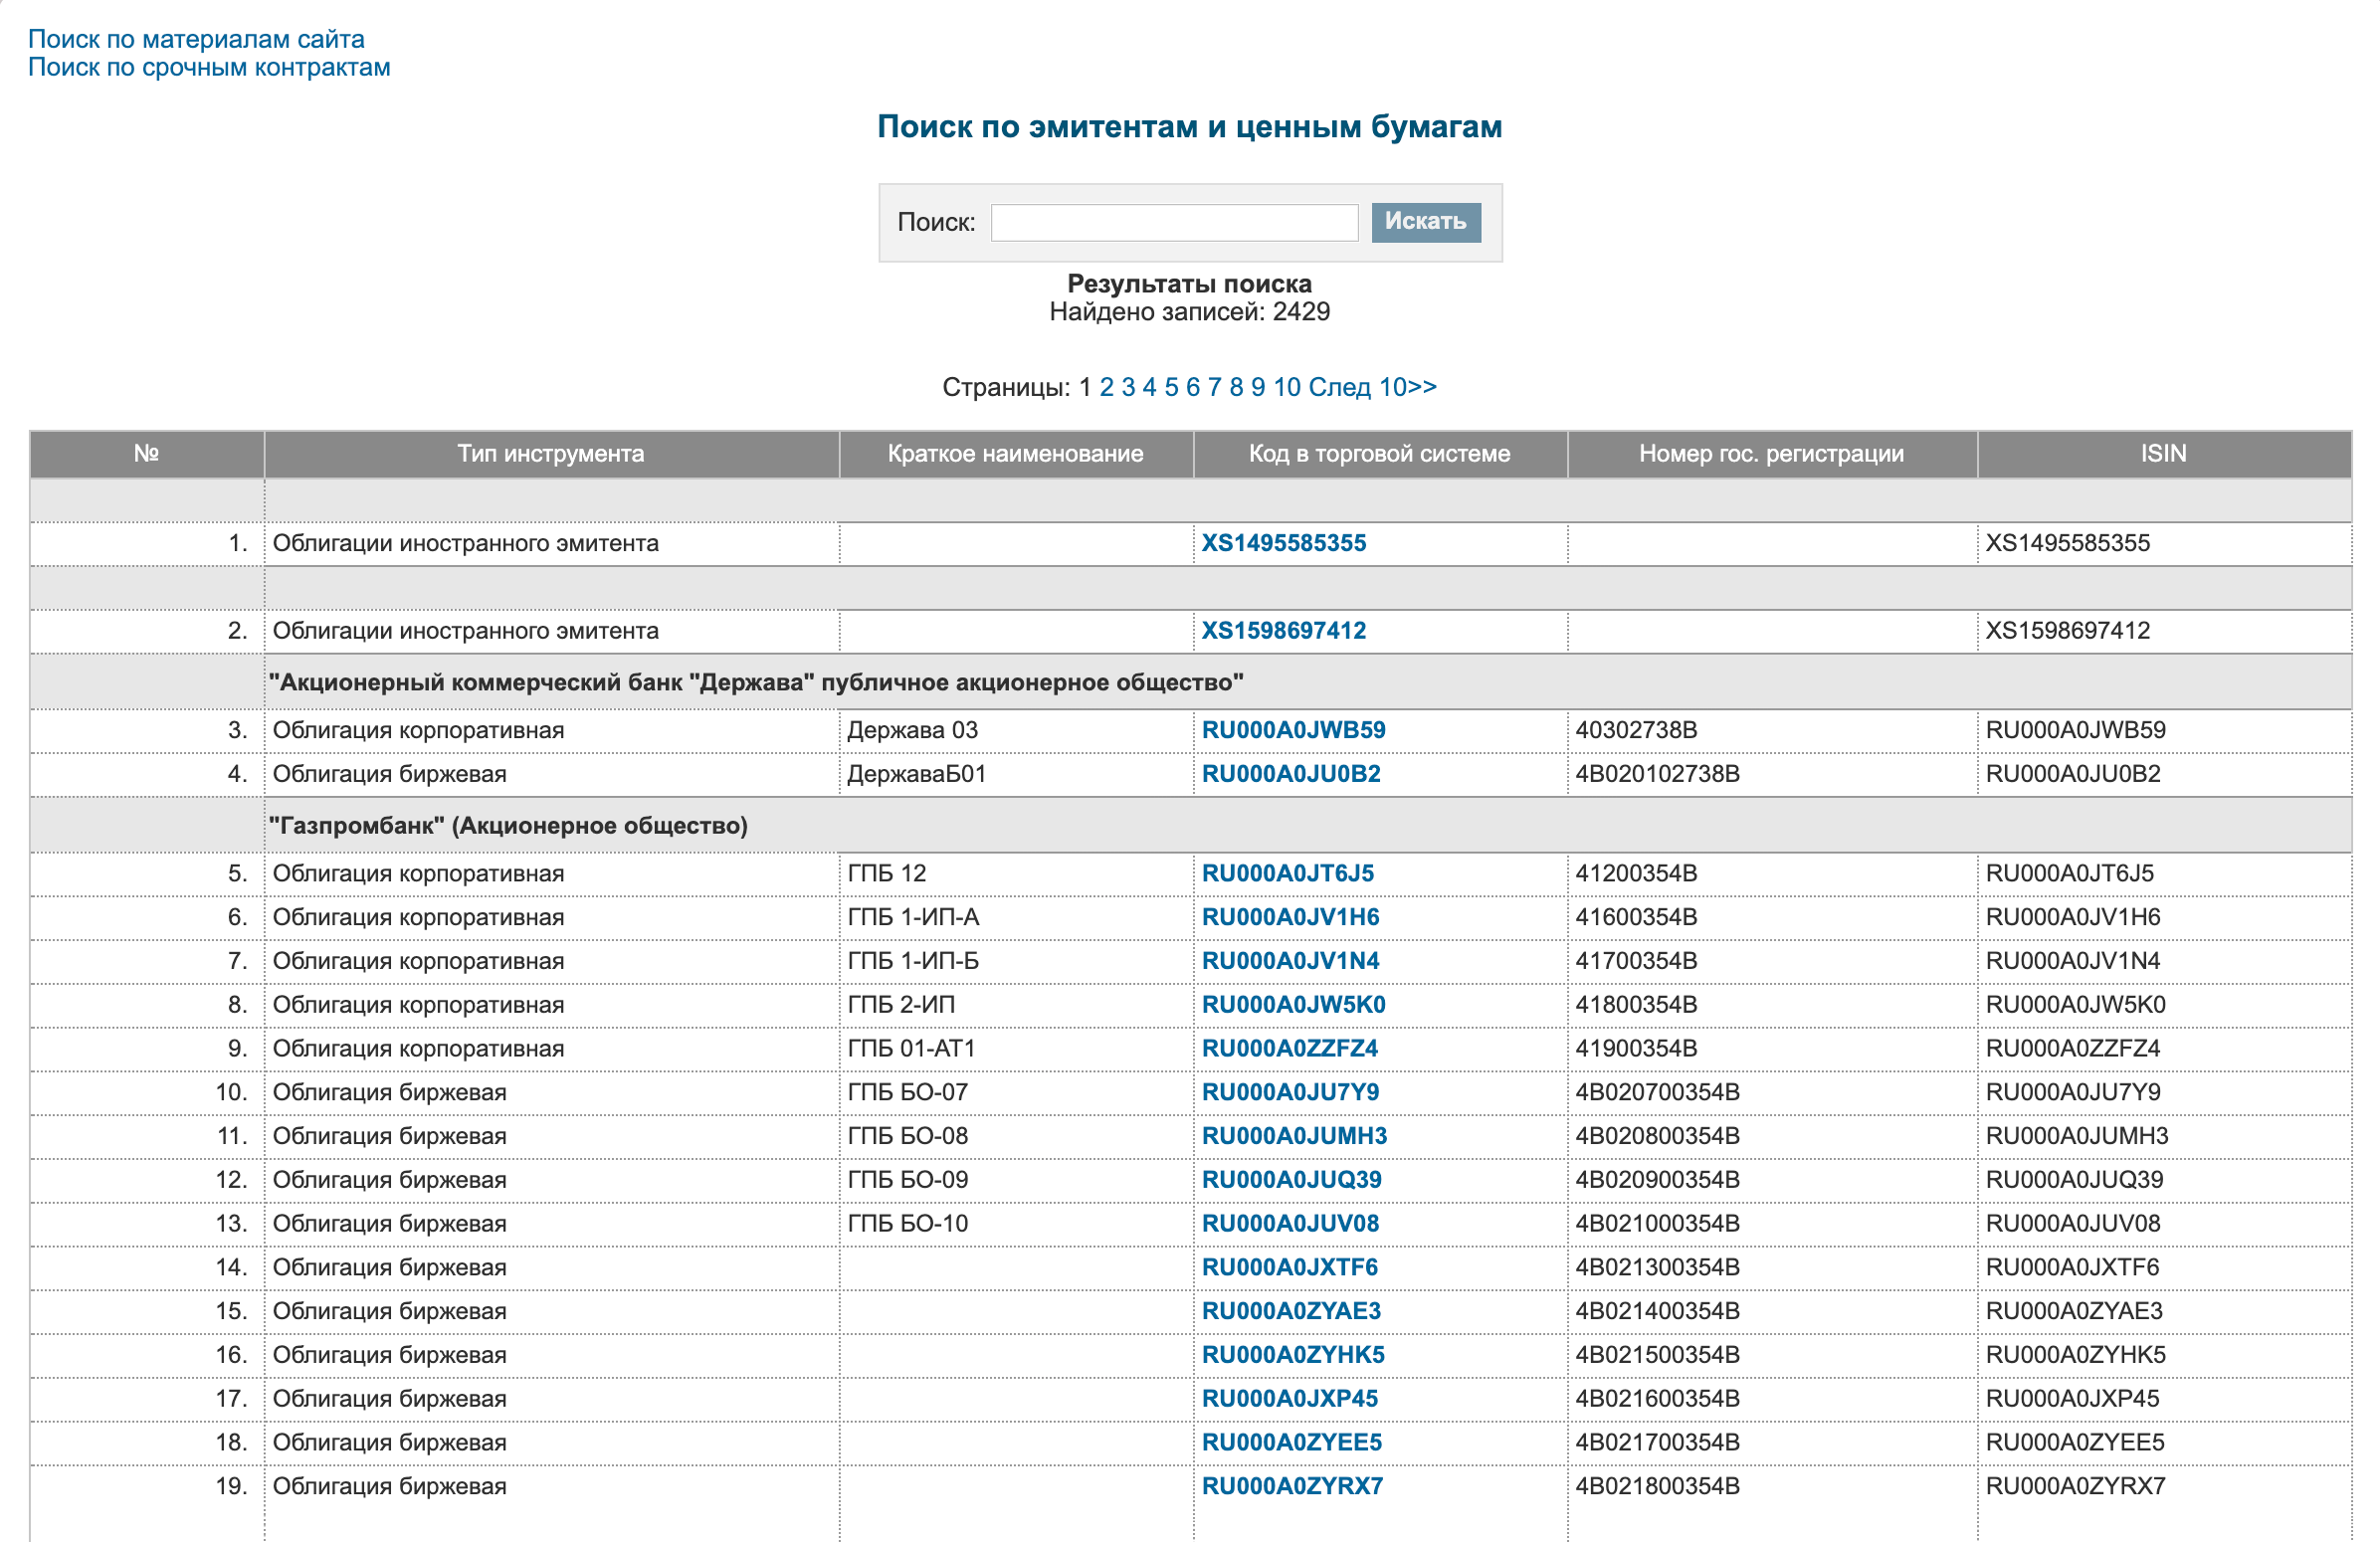 Поиск международных кодов ценных бумаг на сайте Московской биржи. Чтобы определить ISIN, введите название компании и нажмите «Ввод»